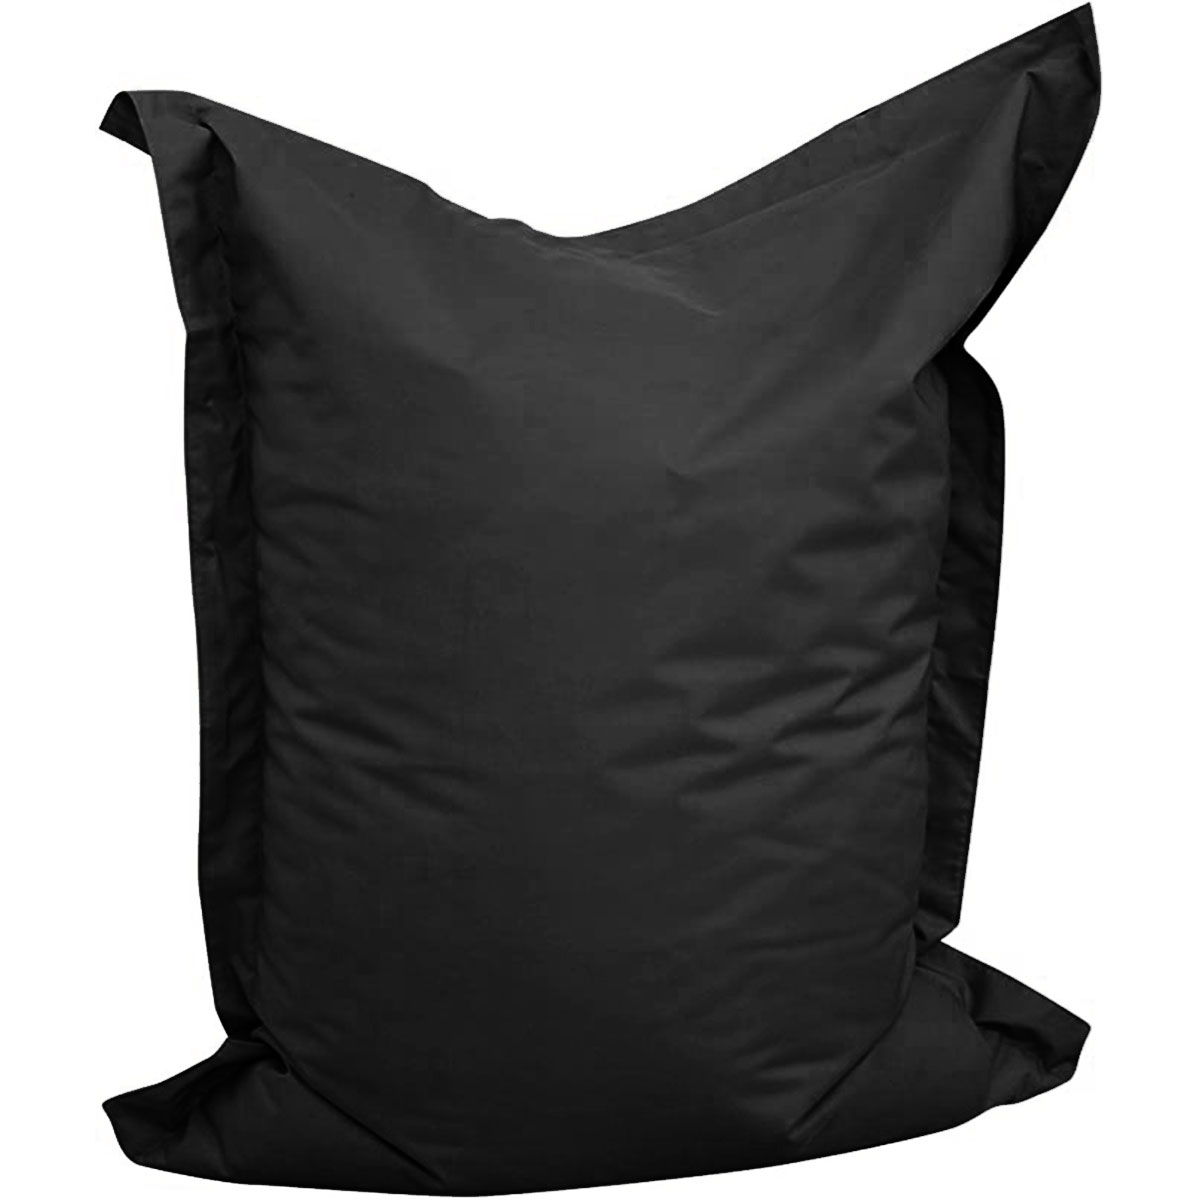 Novo sofá de cadeira de saco de feijão grande capa à prova d'água ao ar livre tampa de saco de assento preguiçoso sem enchimento para adultos crianças tatami macias